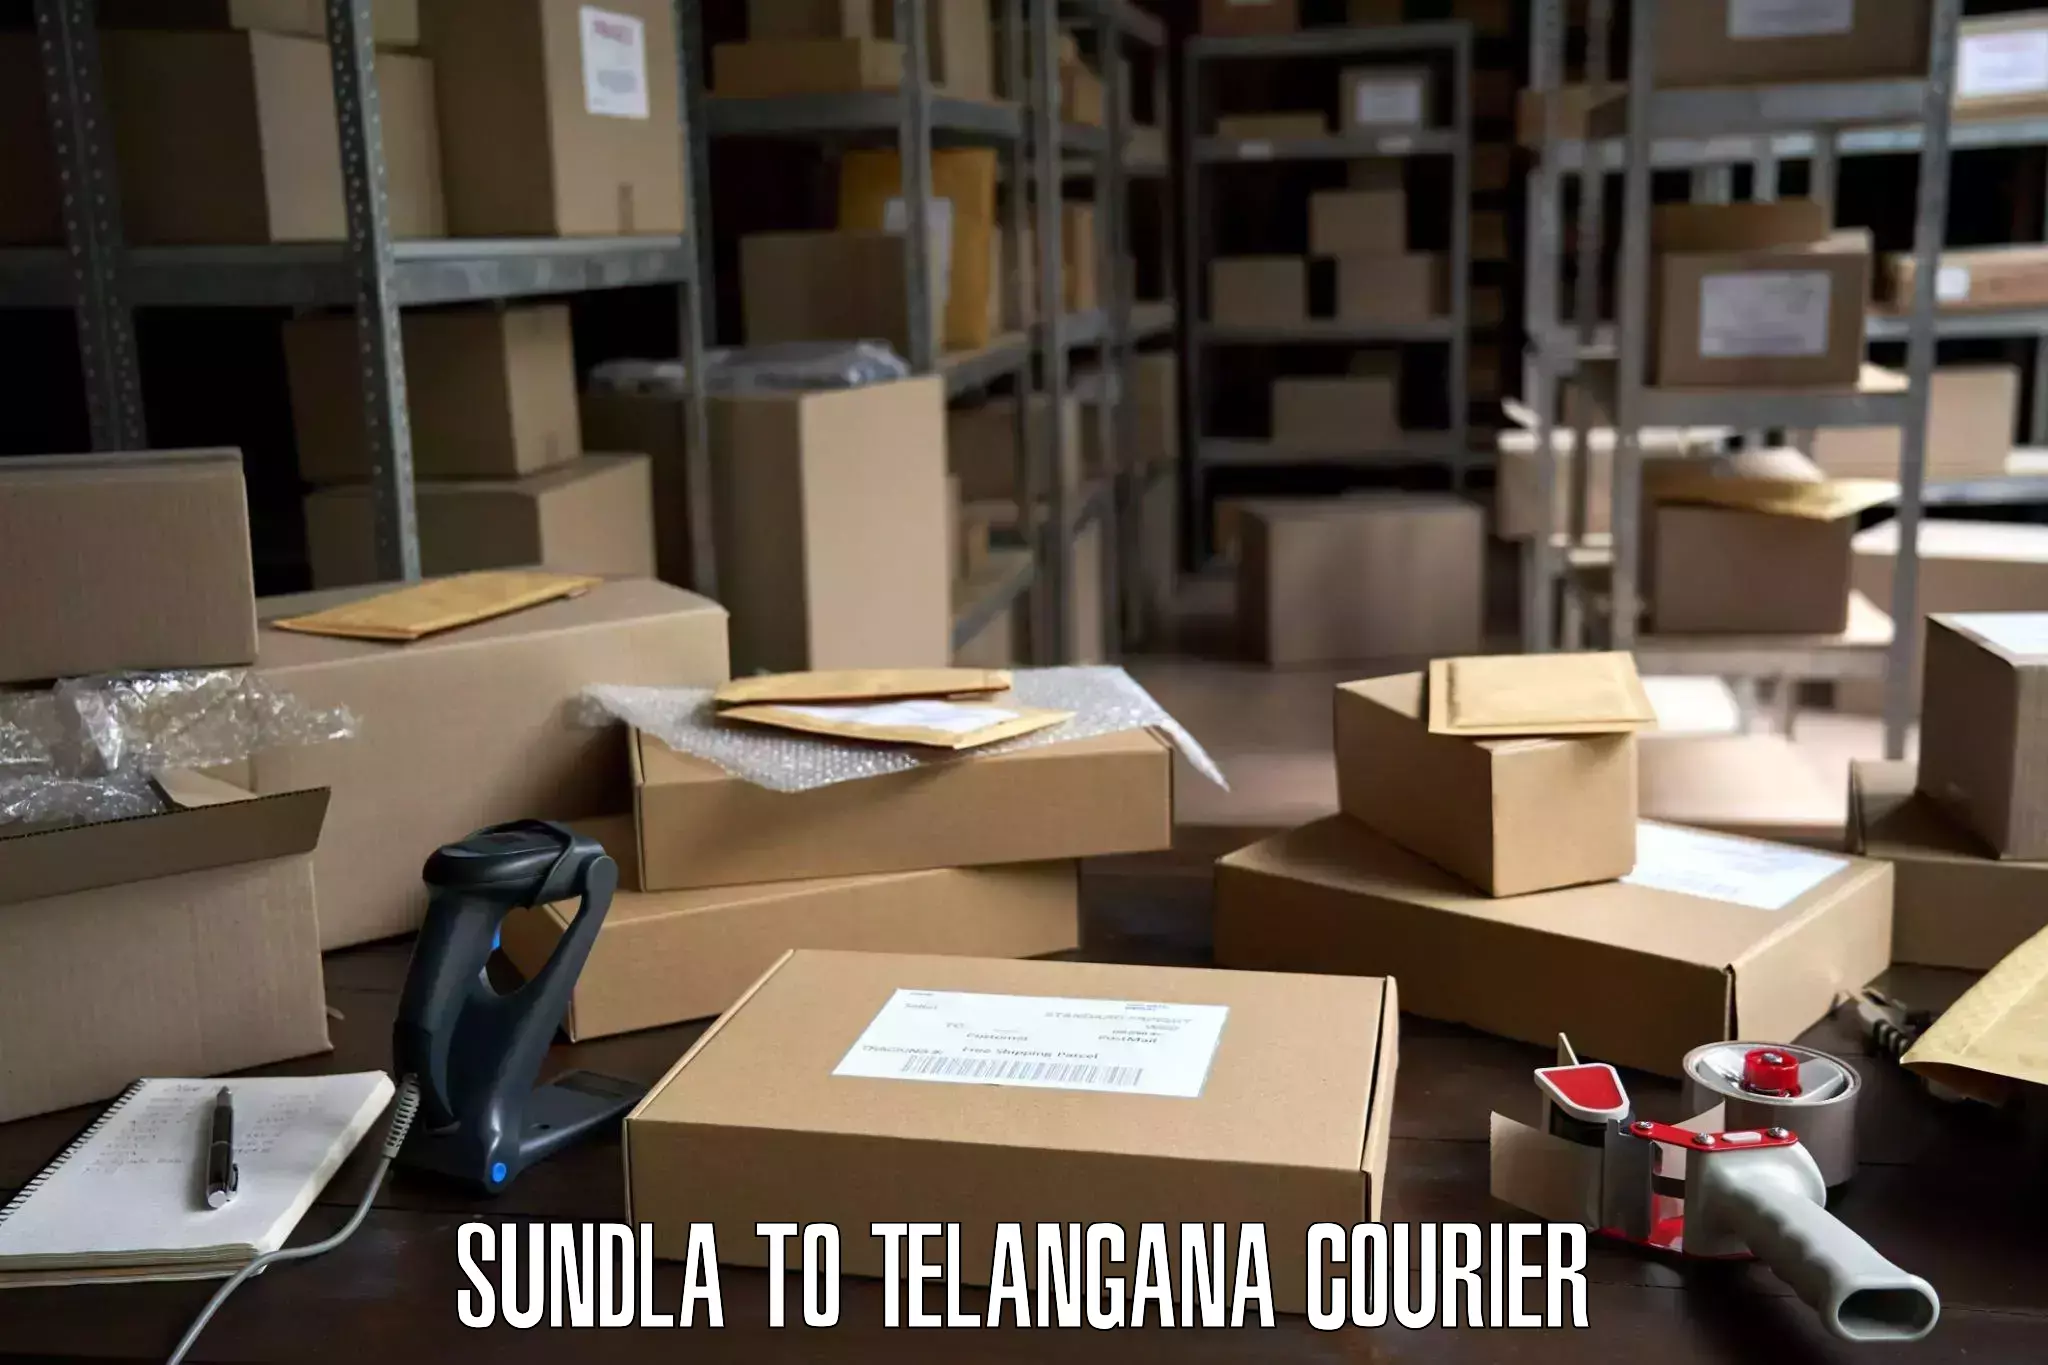 Professional moving company Sundla to Telangana